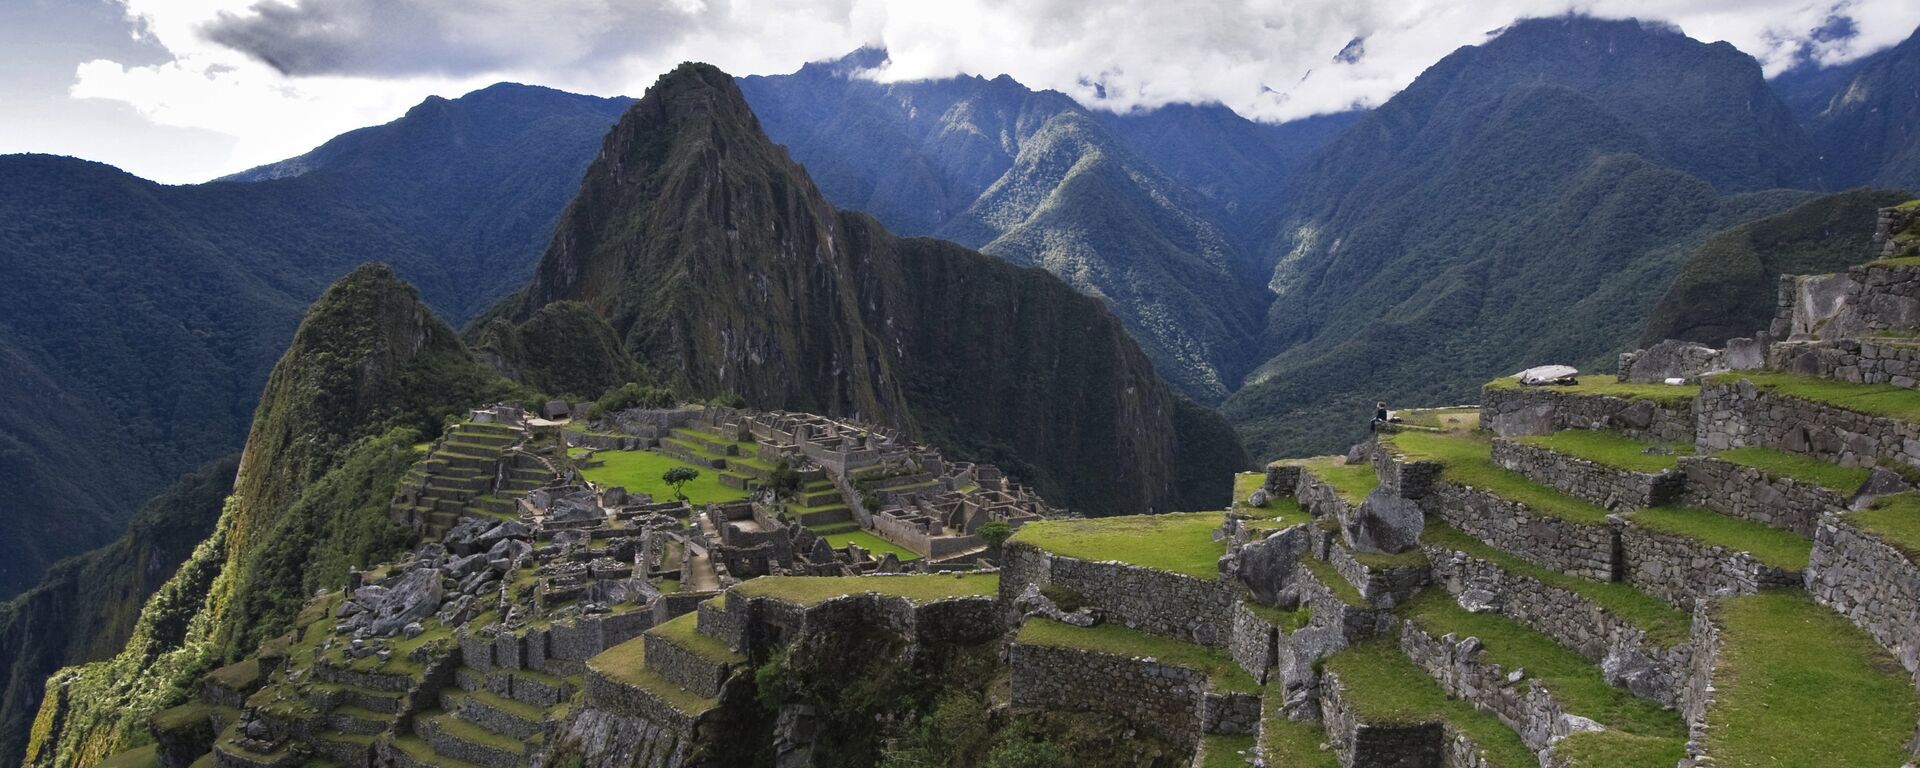 Vista de la montaña Huayna Picchu y las ruinas de la antigua ciudad de Machu Picchu. - Sputnik Mundo, 1920, 28.01.2021